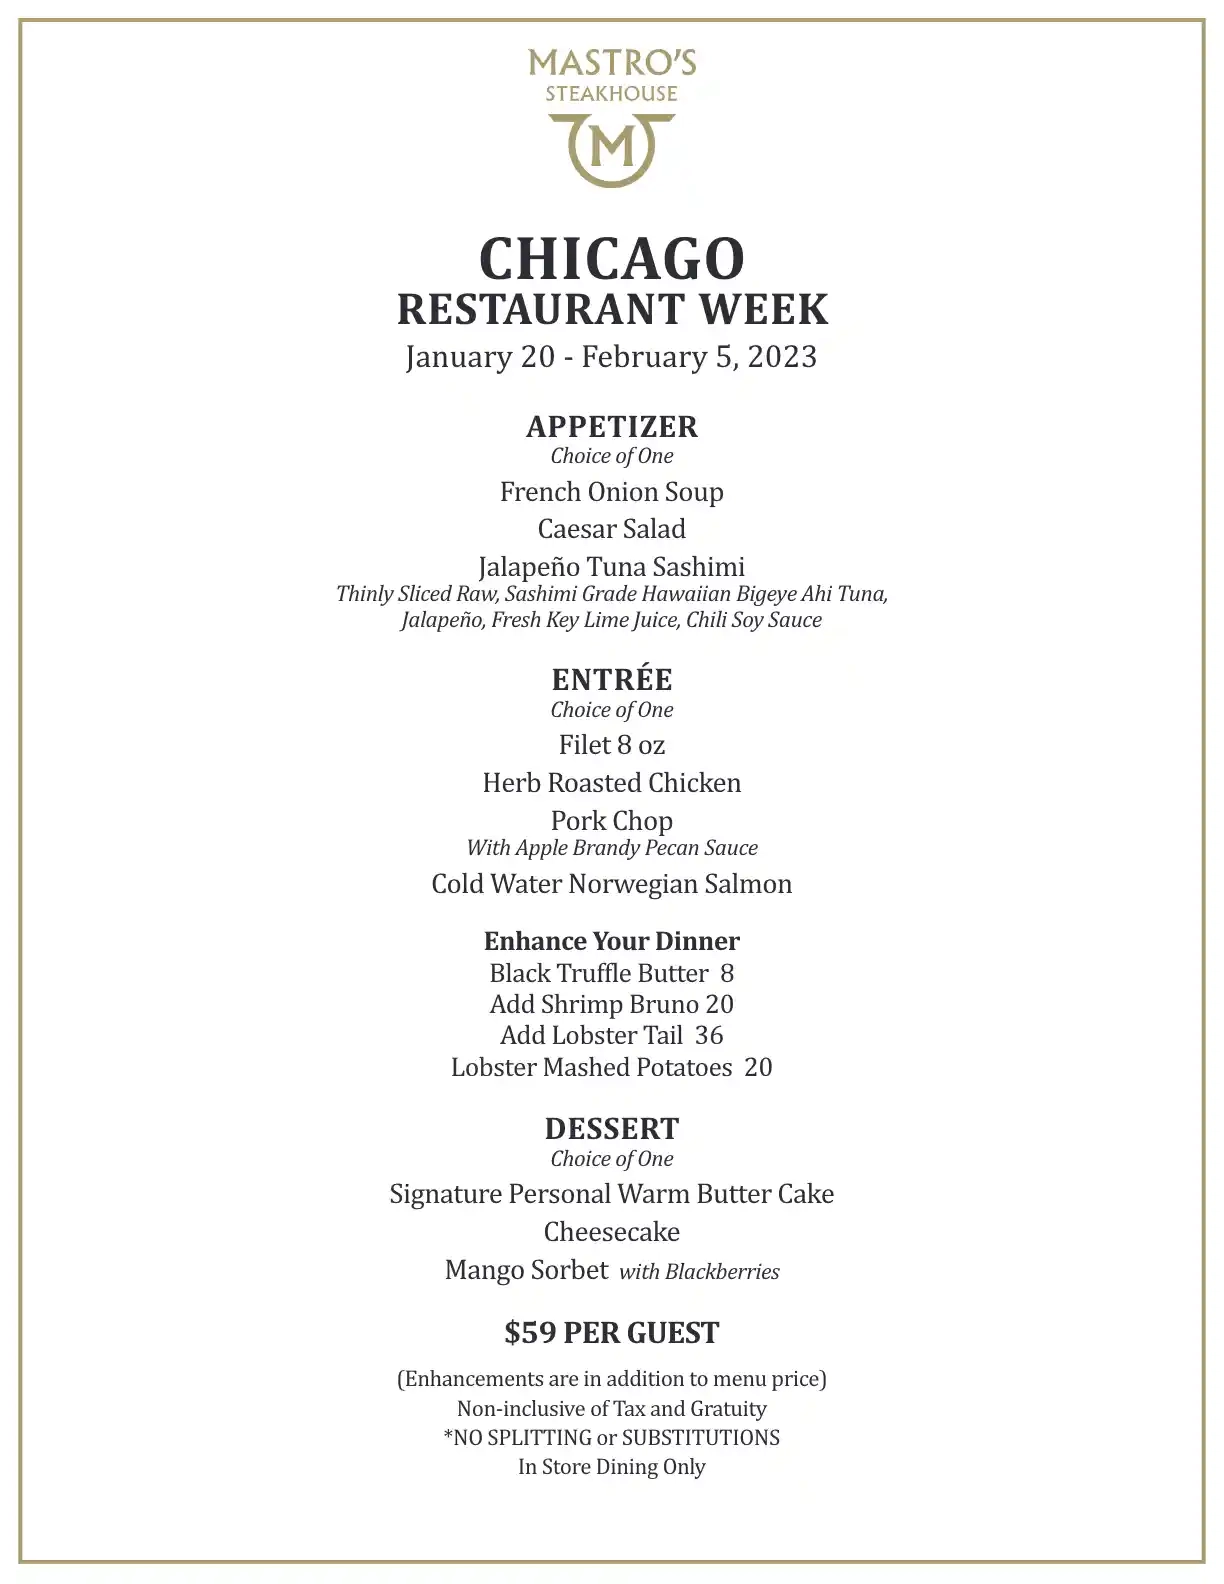 Chicago Restaurant Week 2023 Menu Mastros